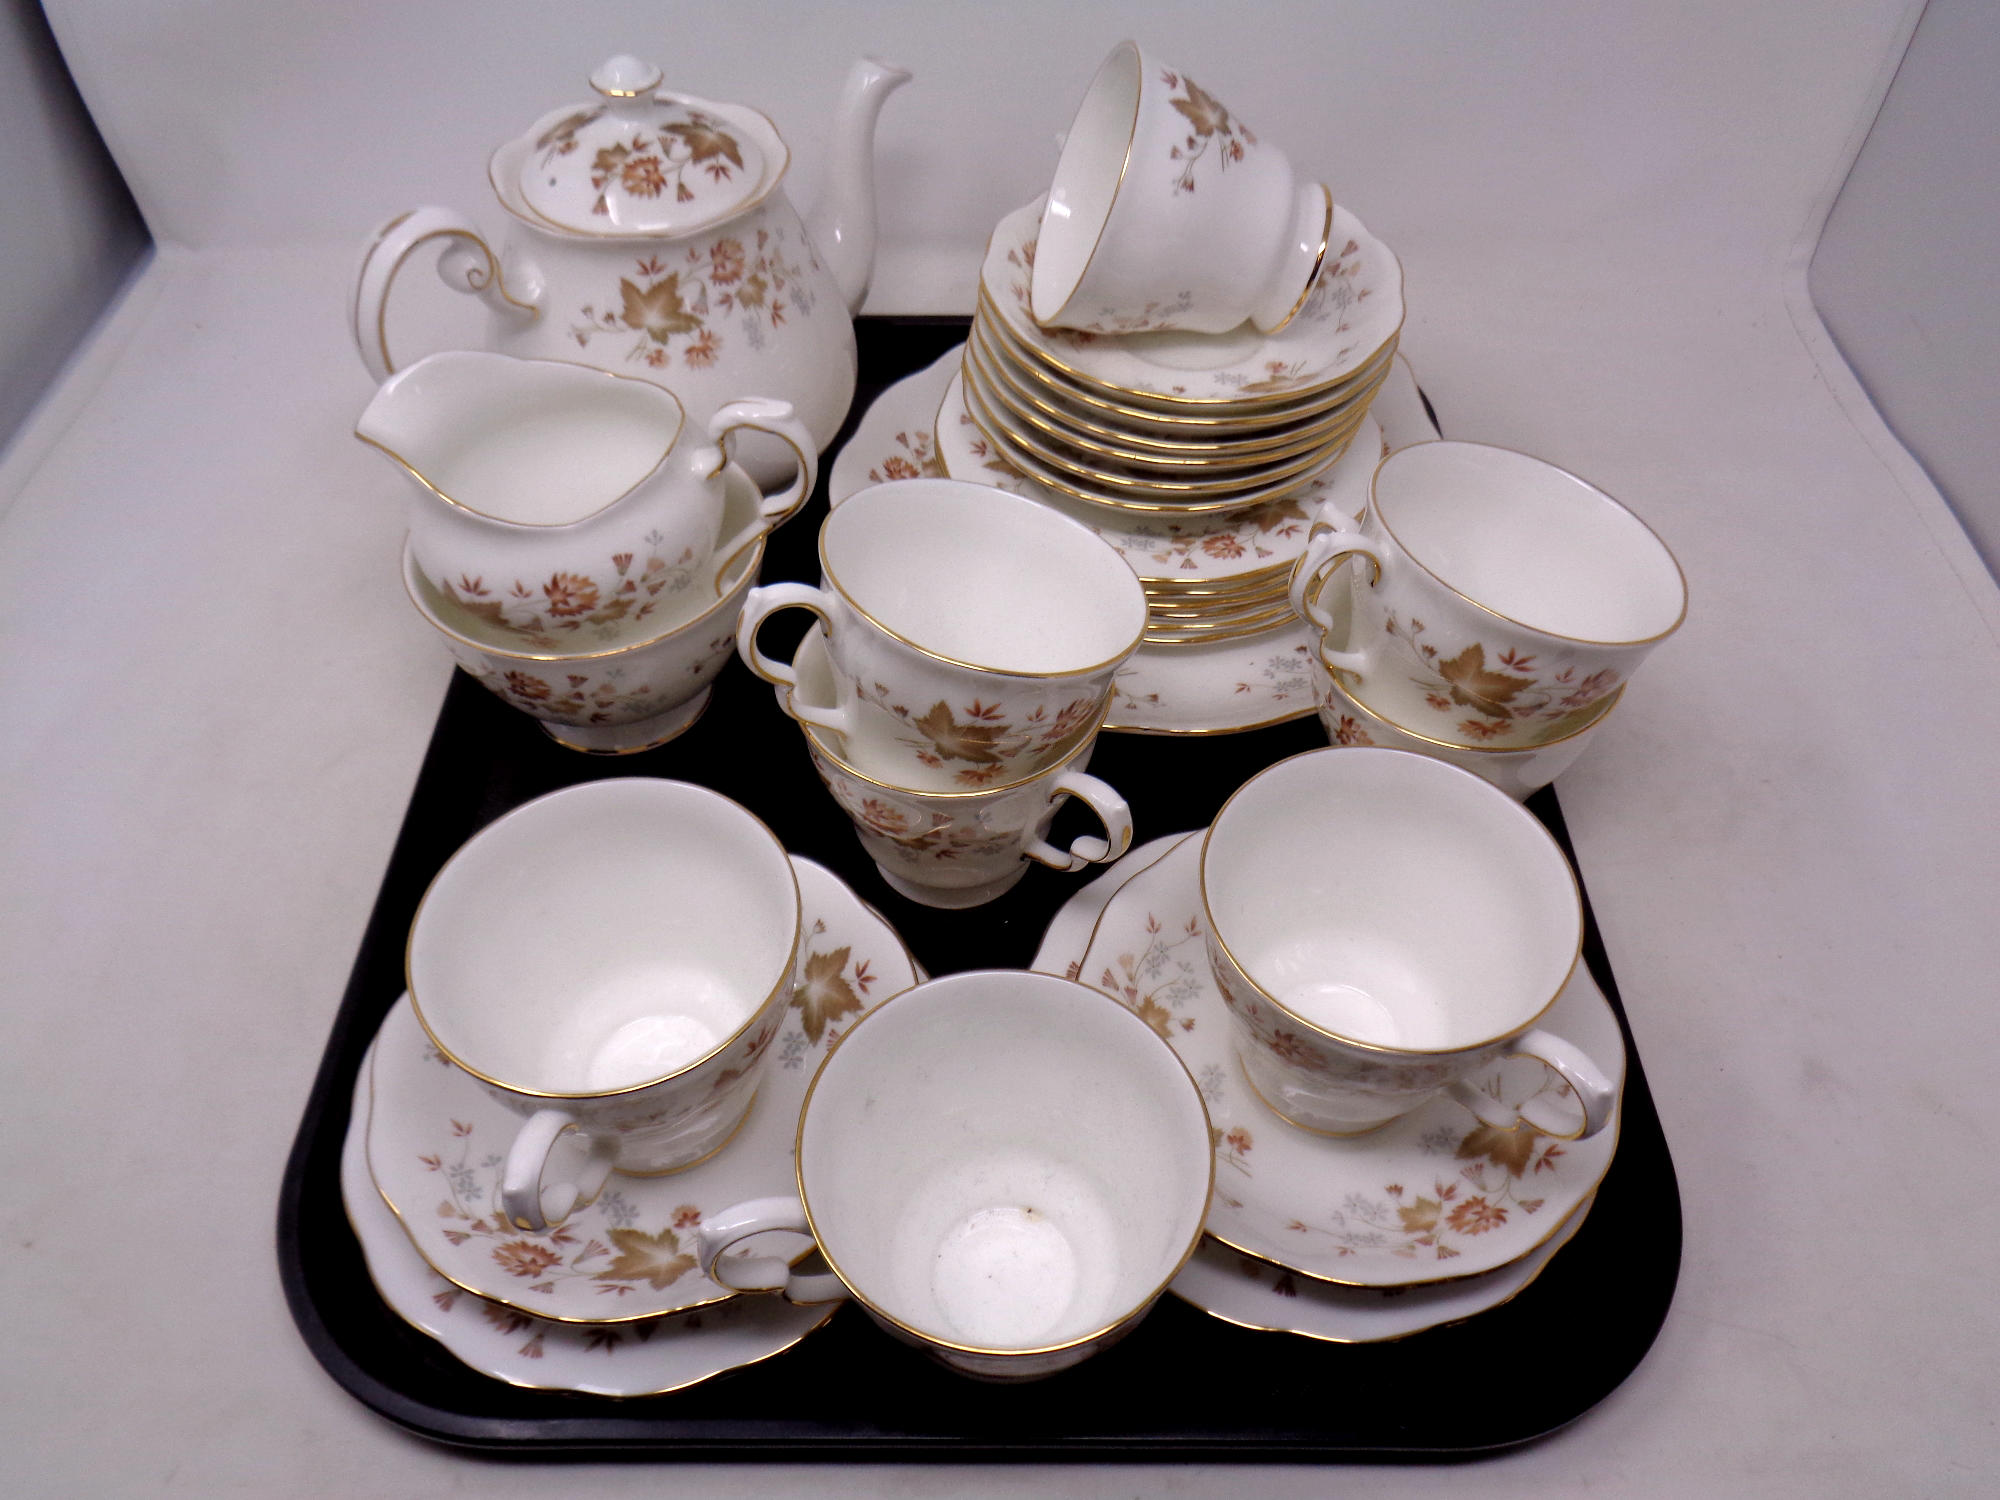 A tray containing a 28 piece Colclough Avon bone china tea service